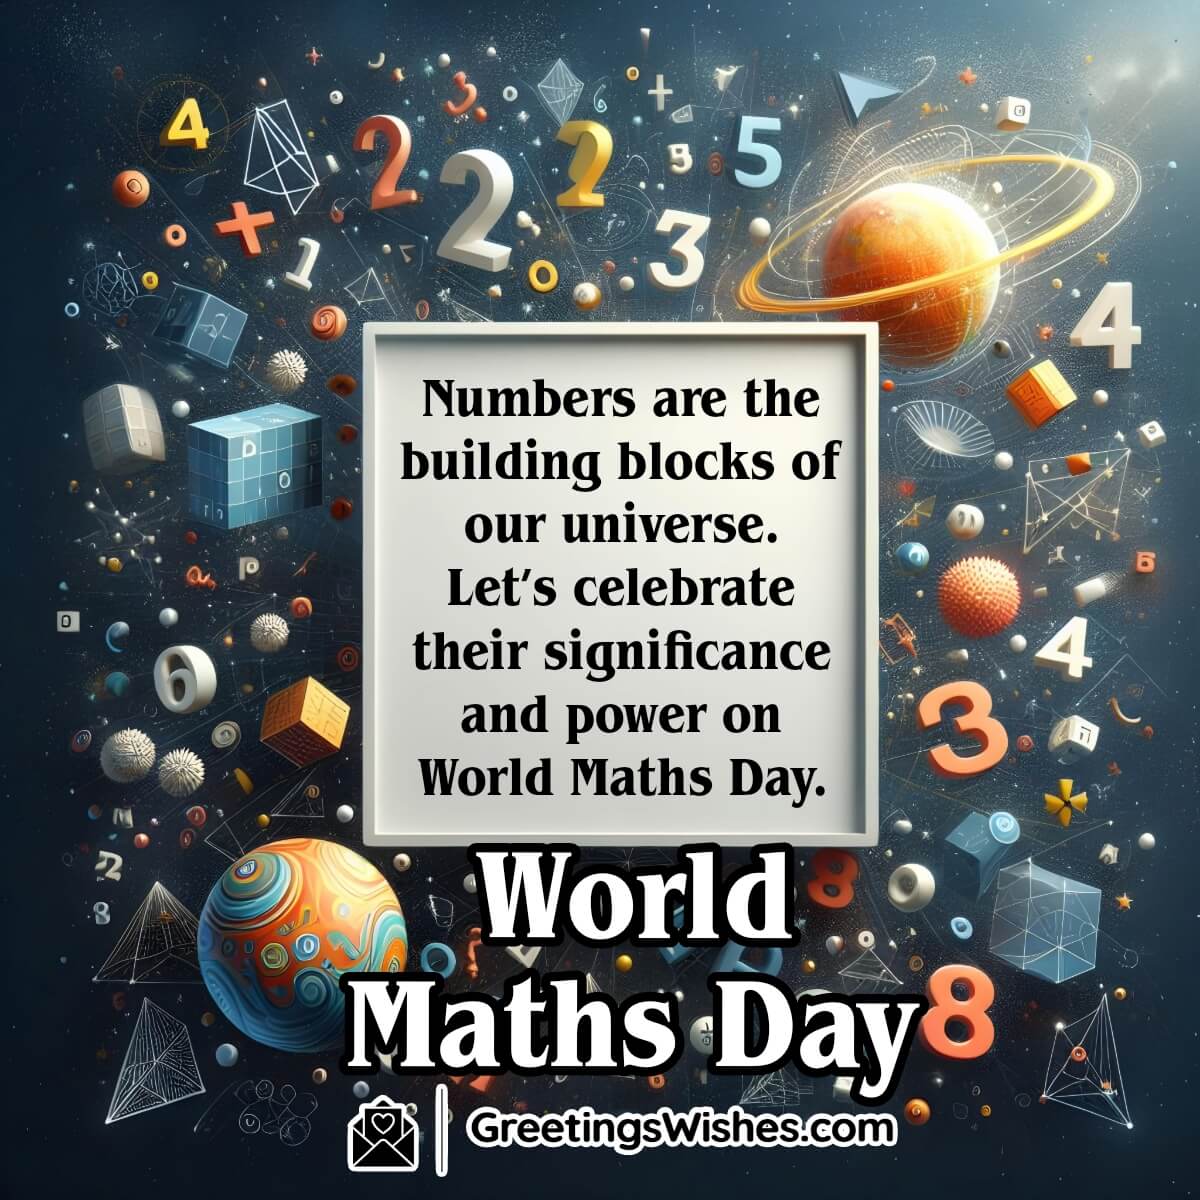 World Maths Day Message